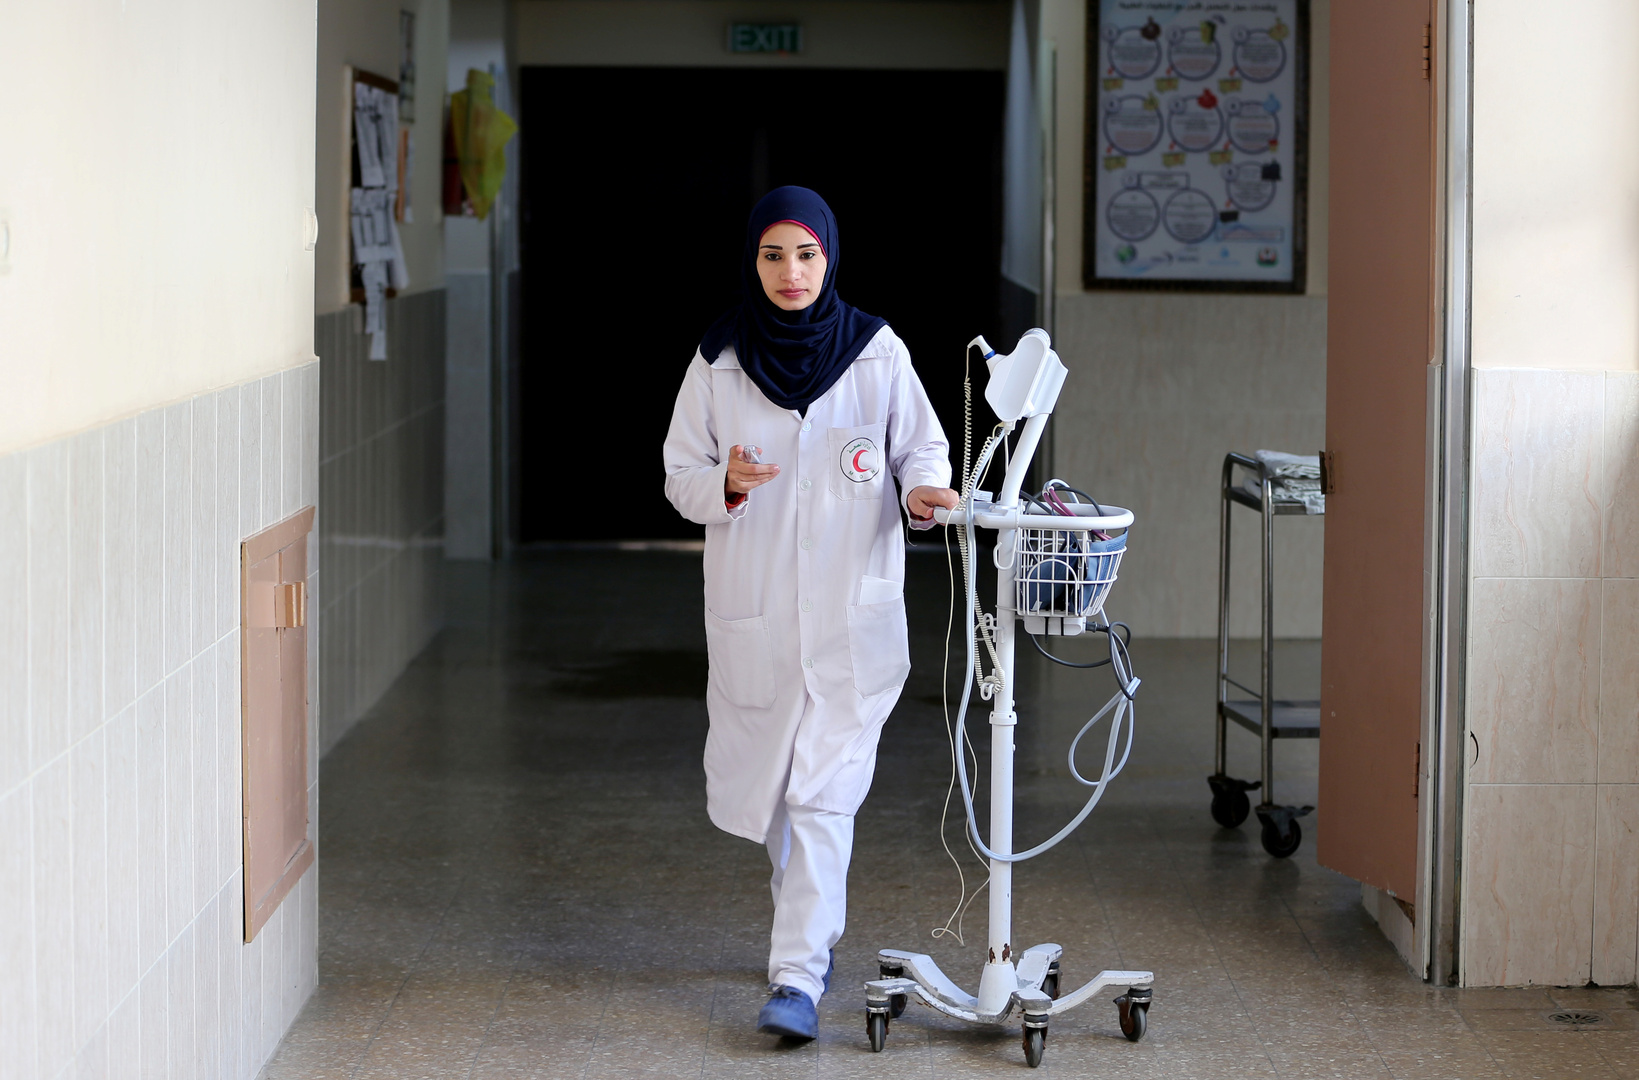 الصحة في غزة: وصول جثامين عدد من المواطنين للمستشفى وشبهات بتعرضهم لاستنشاق غاز سام